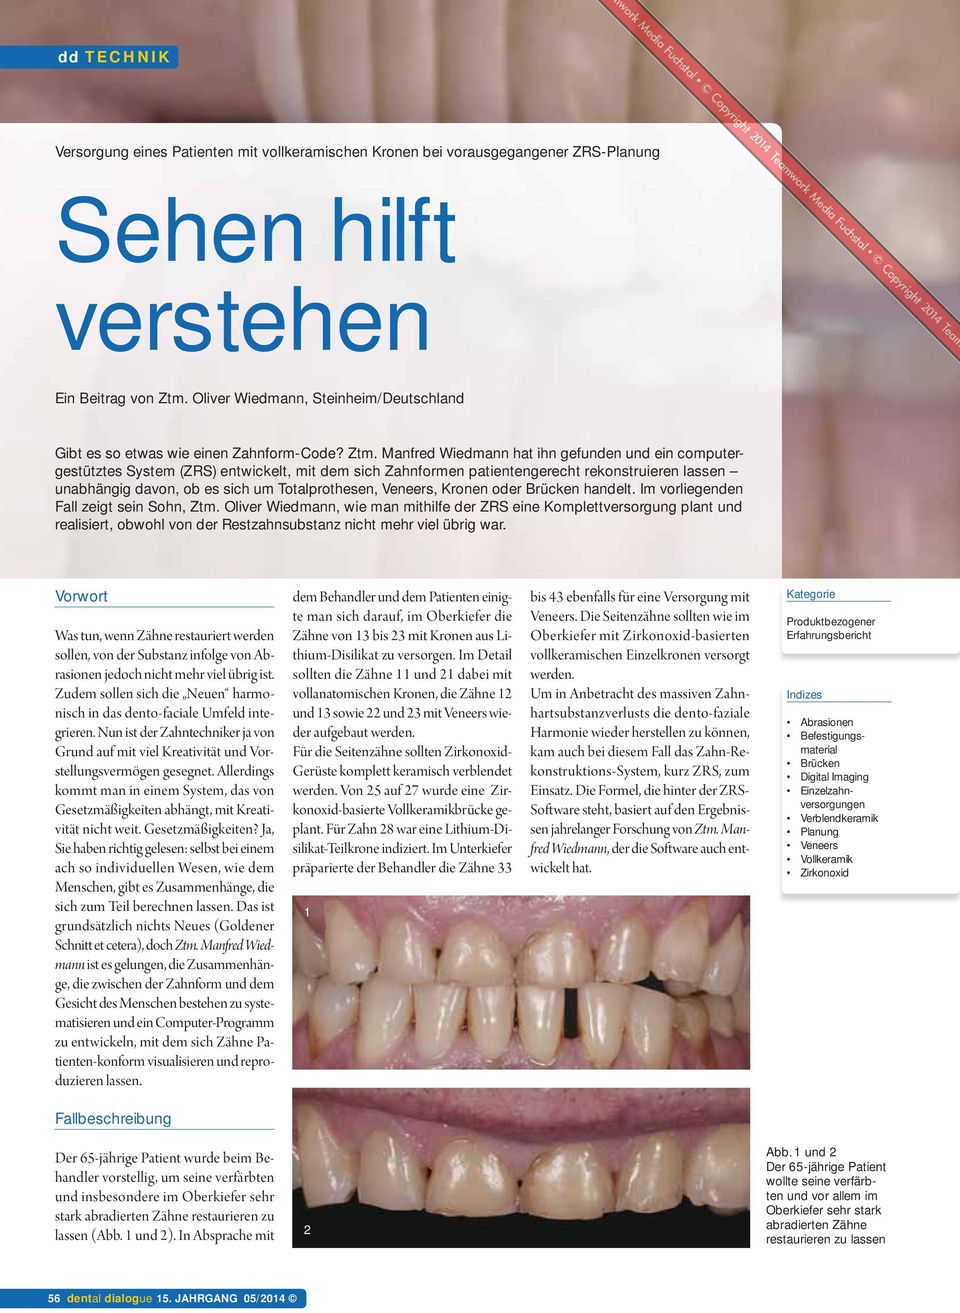 Manfred Wiedmann hat ihn gefunden und ein computergestütztes System (ZRS) entwickelt, mit dem sich Zahnformen patientengerecht rekonstruieren lassen unabhängig davon, ob es sich um Totalprothesen,